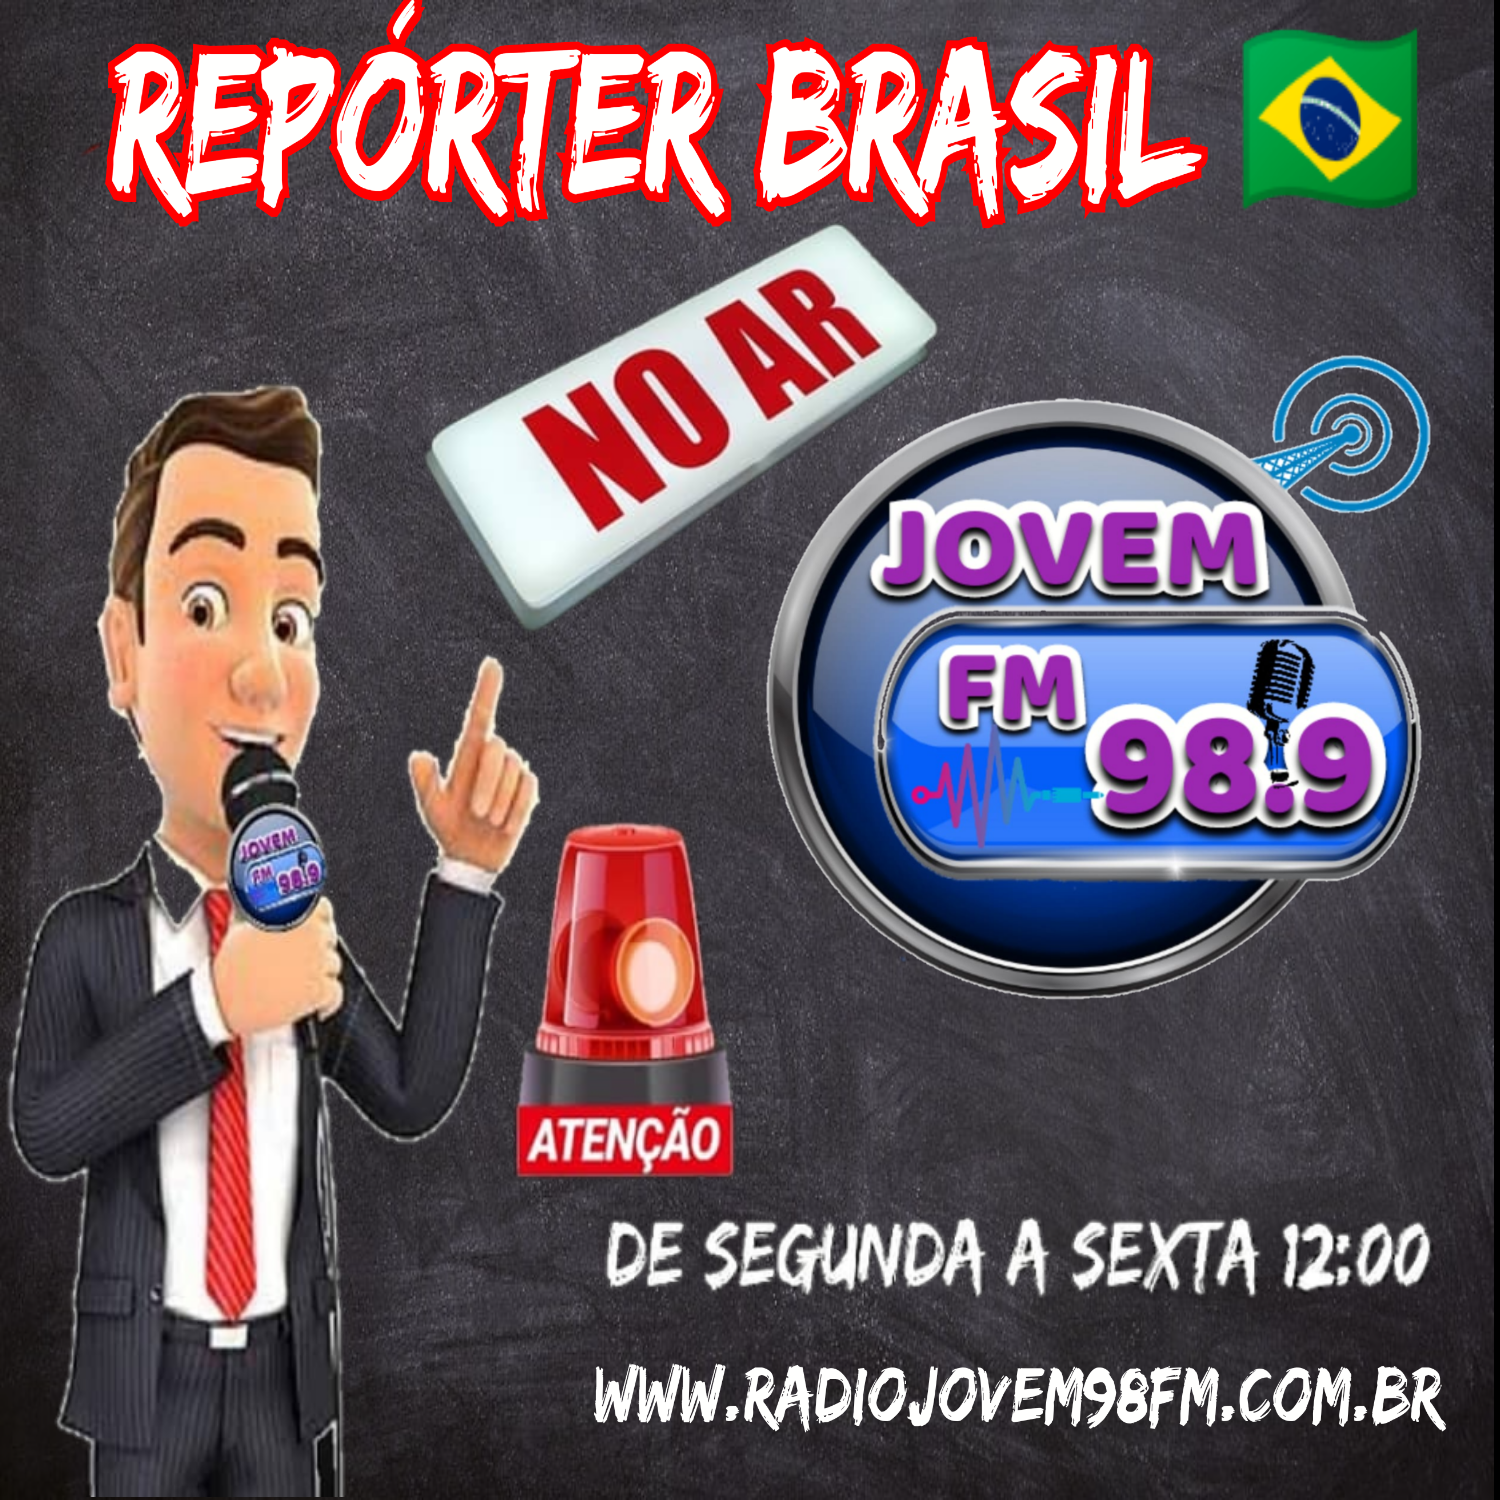 REPORTER BRASIL